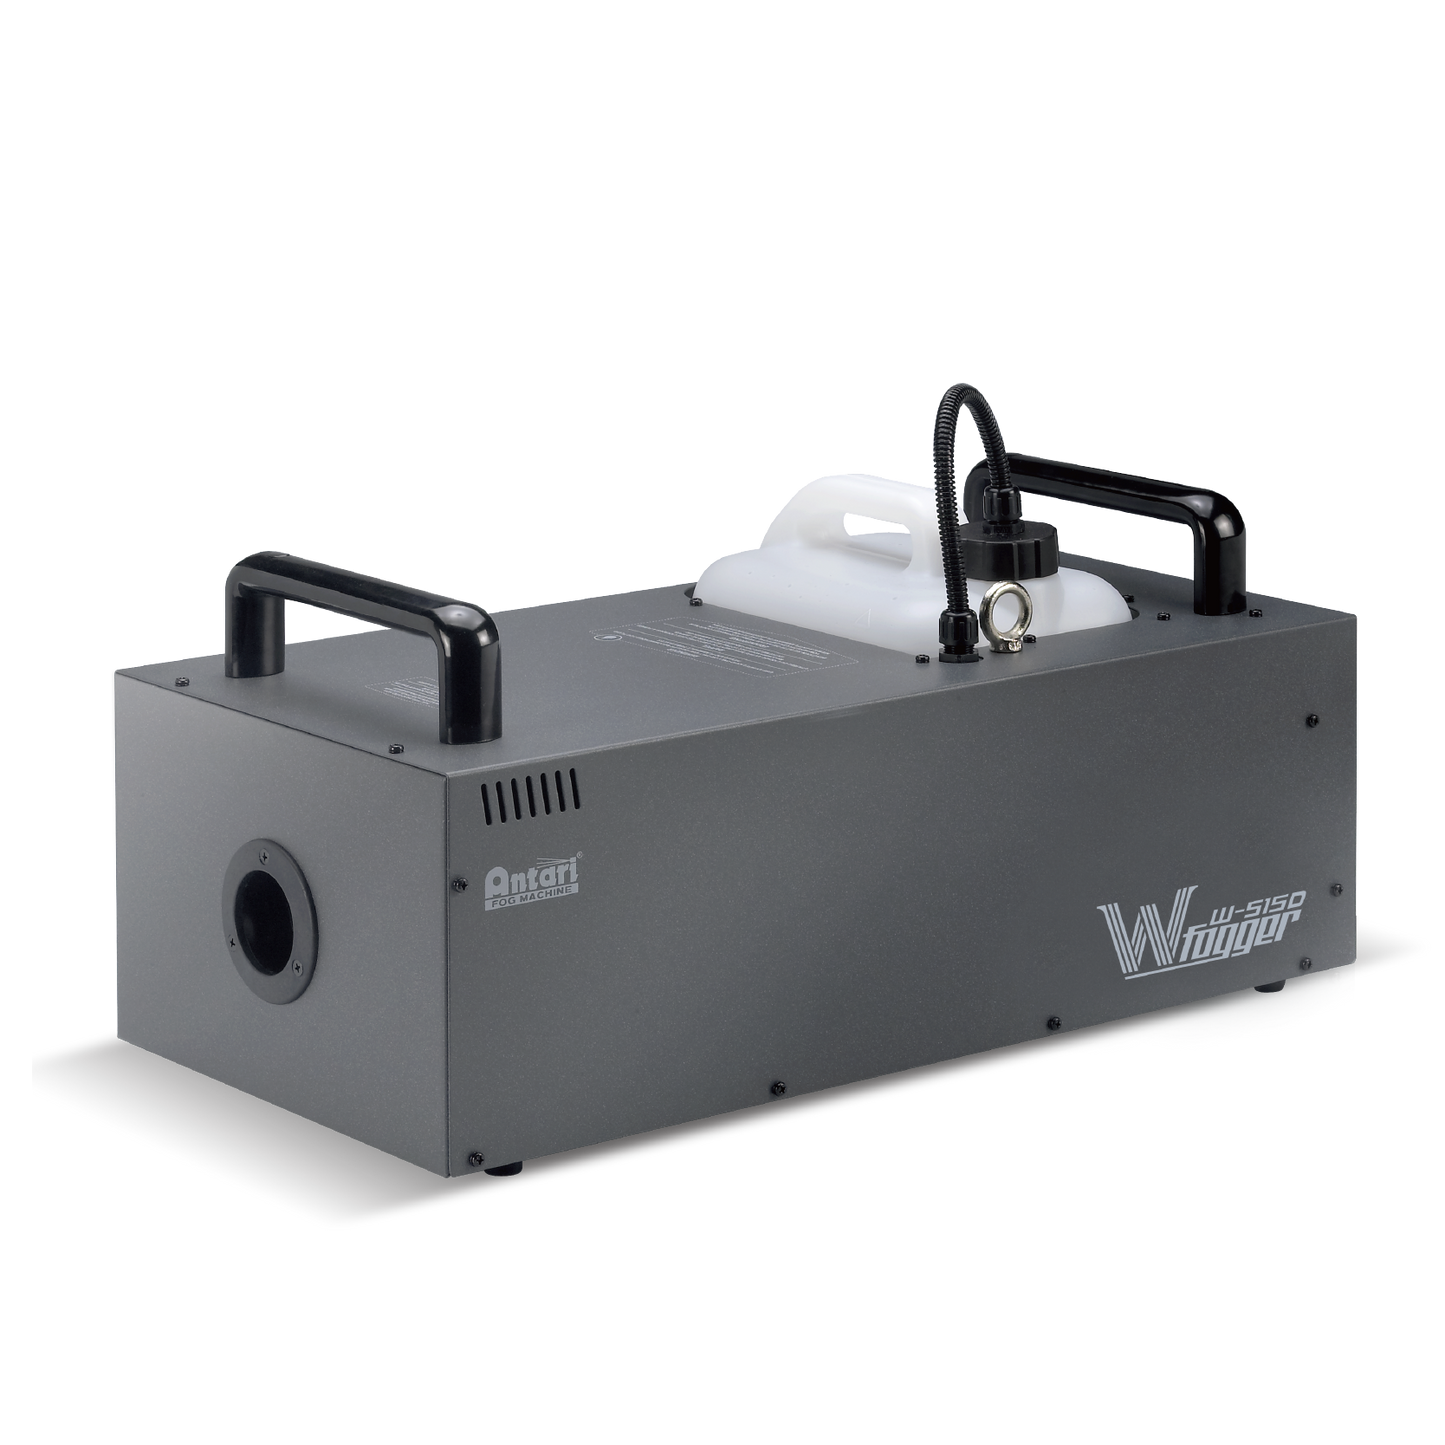 W-515D Wireless Fog Machine